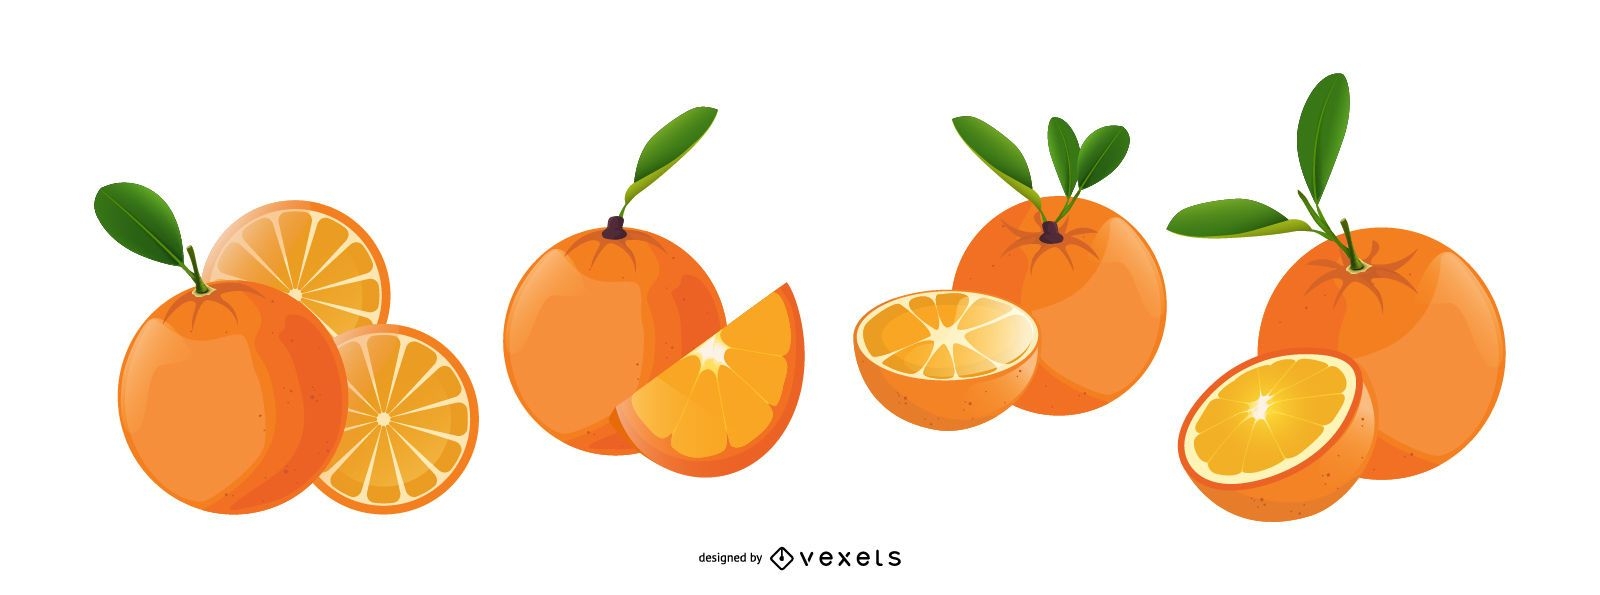 ?cones ilustrados de frutas laranjas